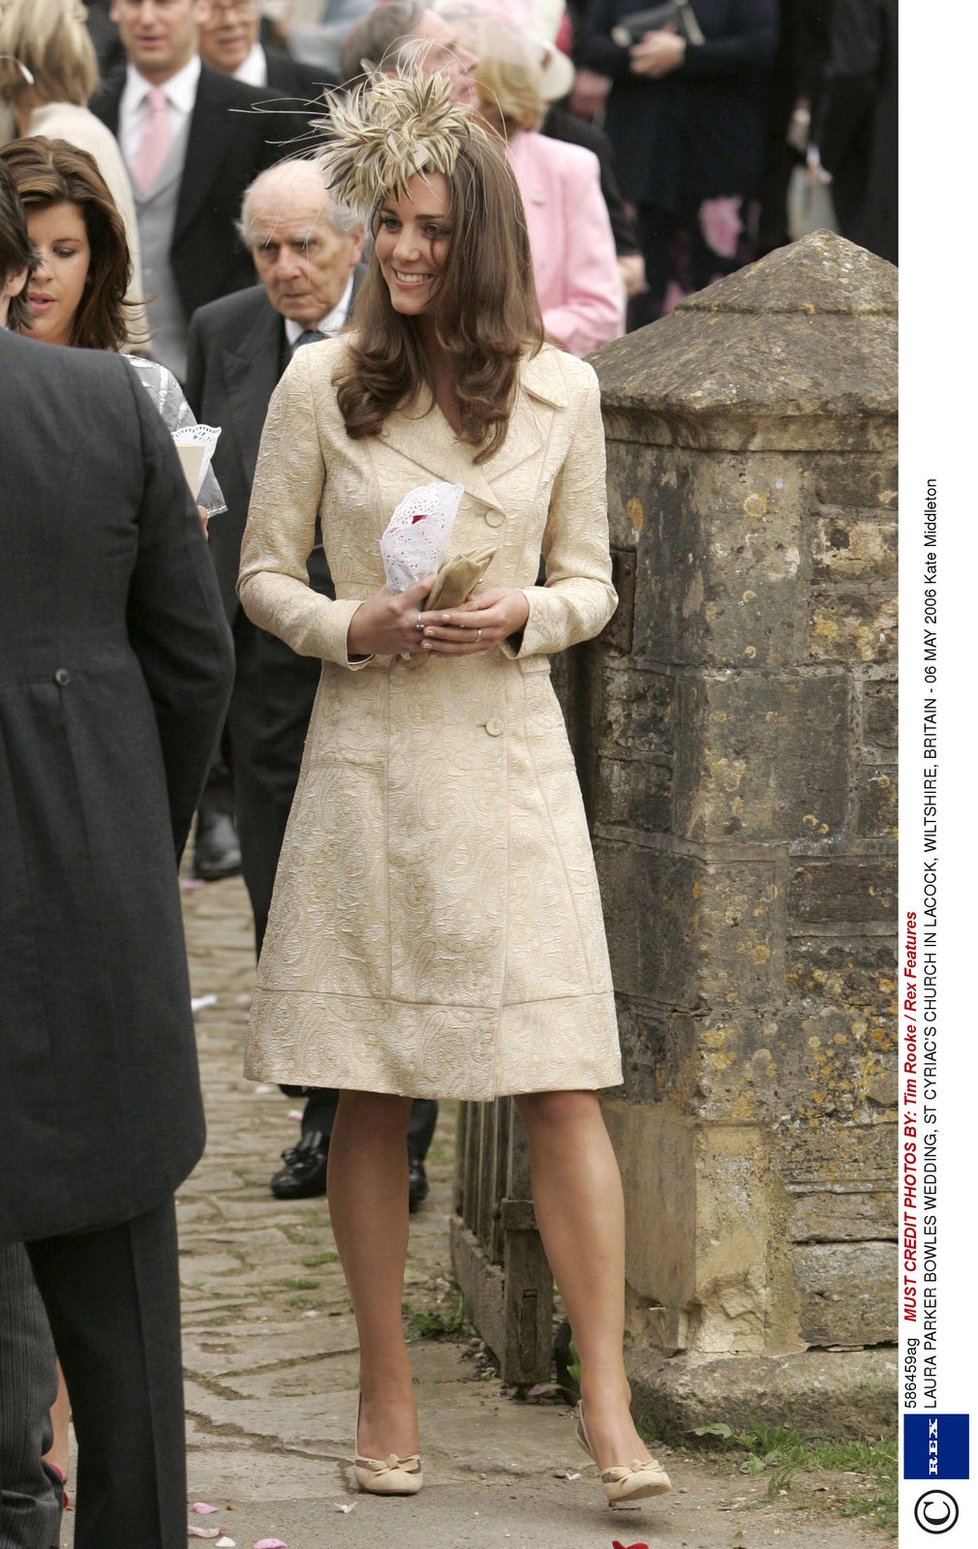 2006: Poprvé se v něm objevila na svatbě Sarah Parker Bowles, která je dcerou Camilly (68), manželky prince Charlese (67). Doplnila ho o klobouček s ptačími pery.